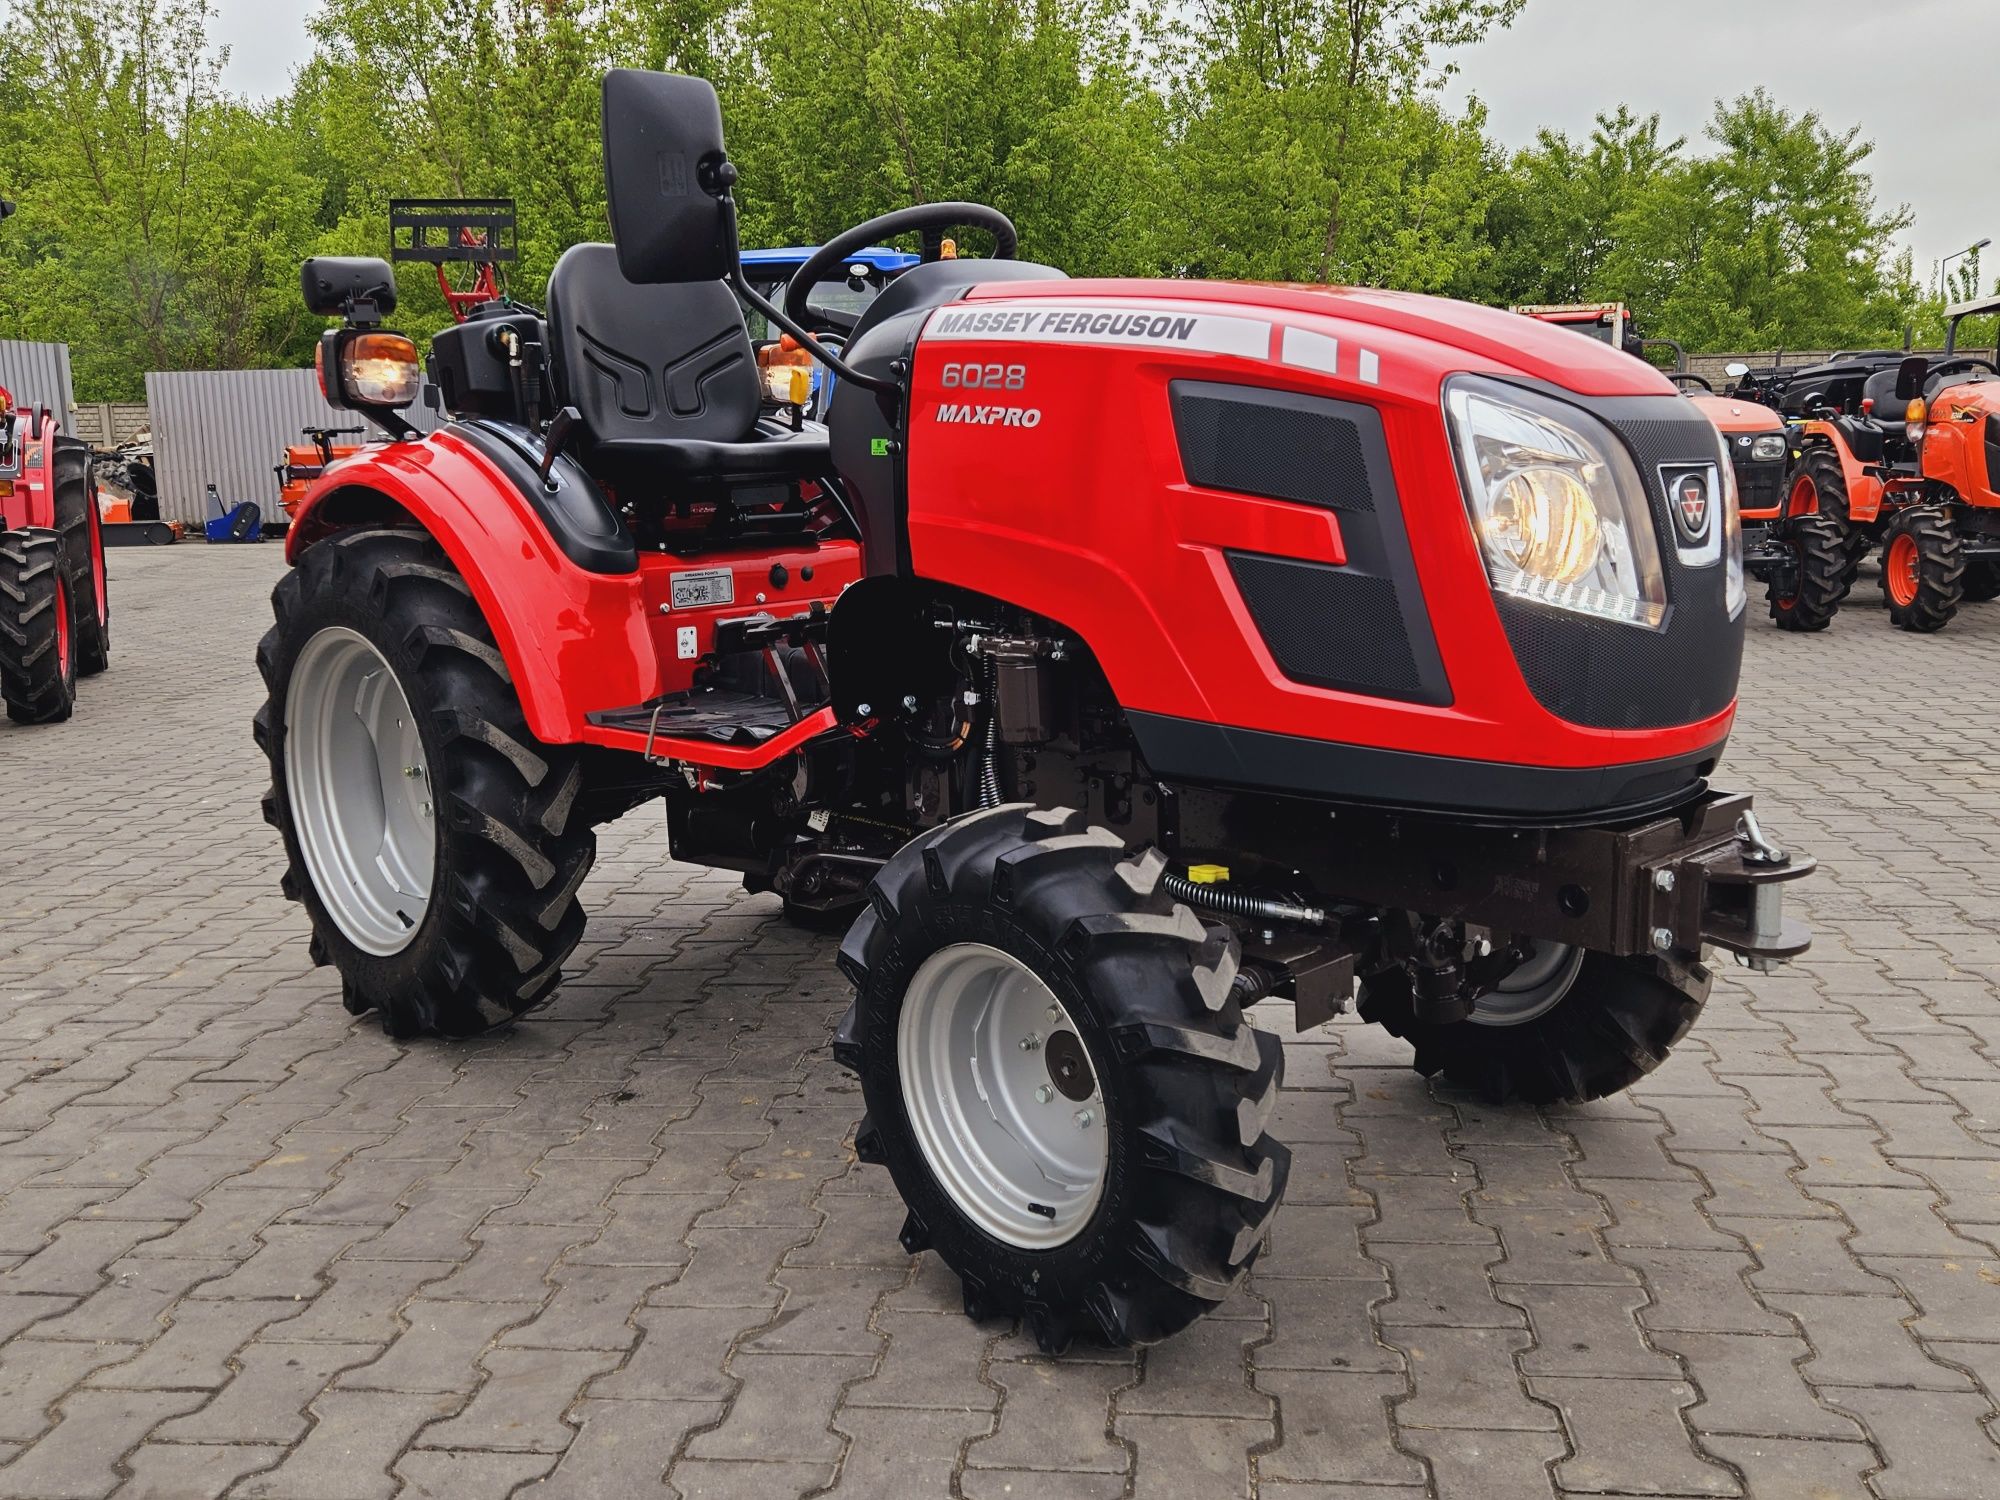 Nowy Traktorek Massey Ferguson 6028. Mini traktorek,ciagniczek traktor